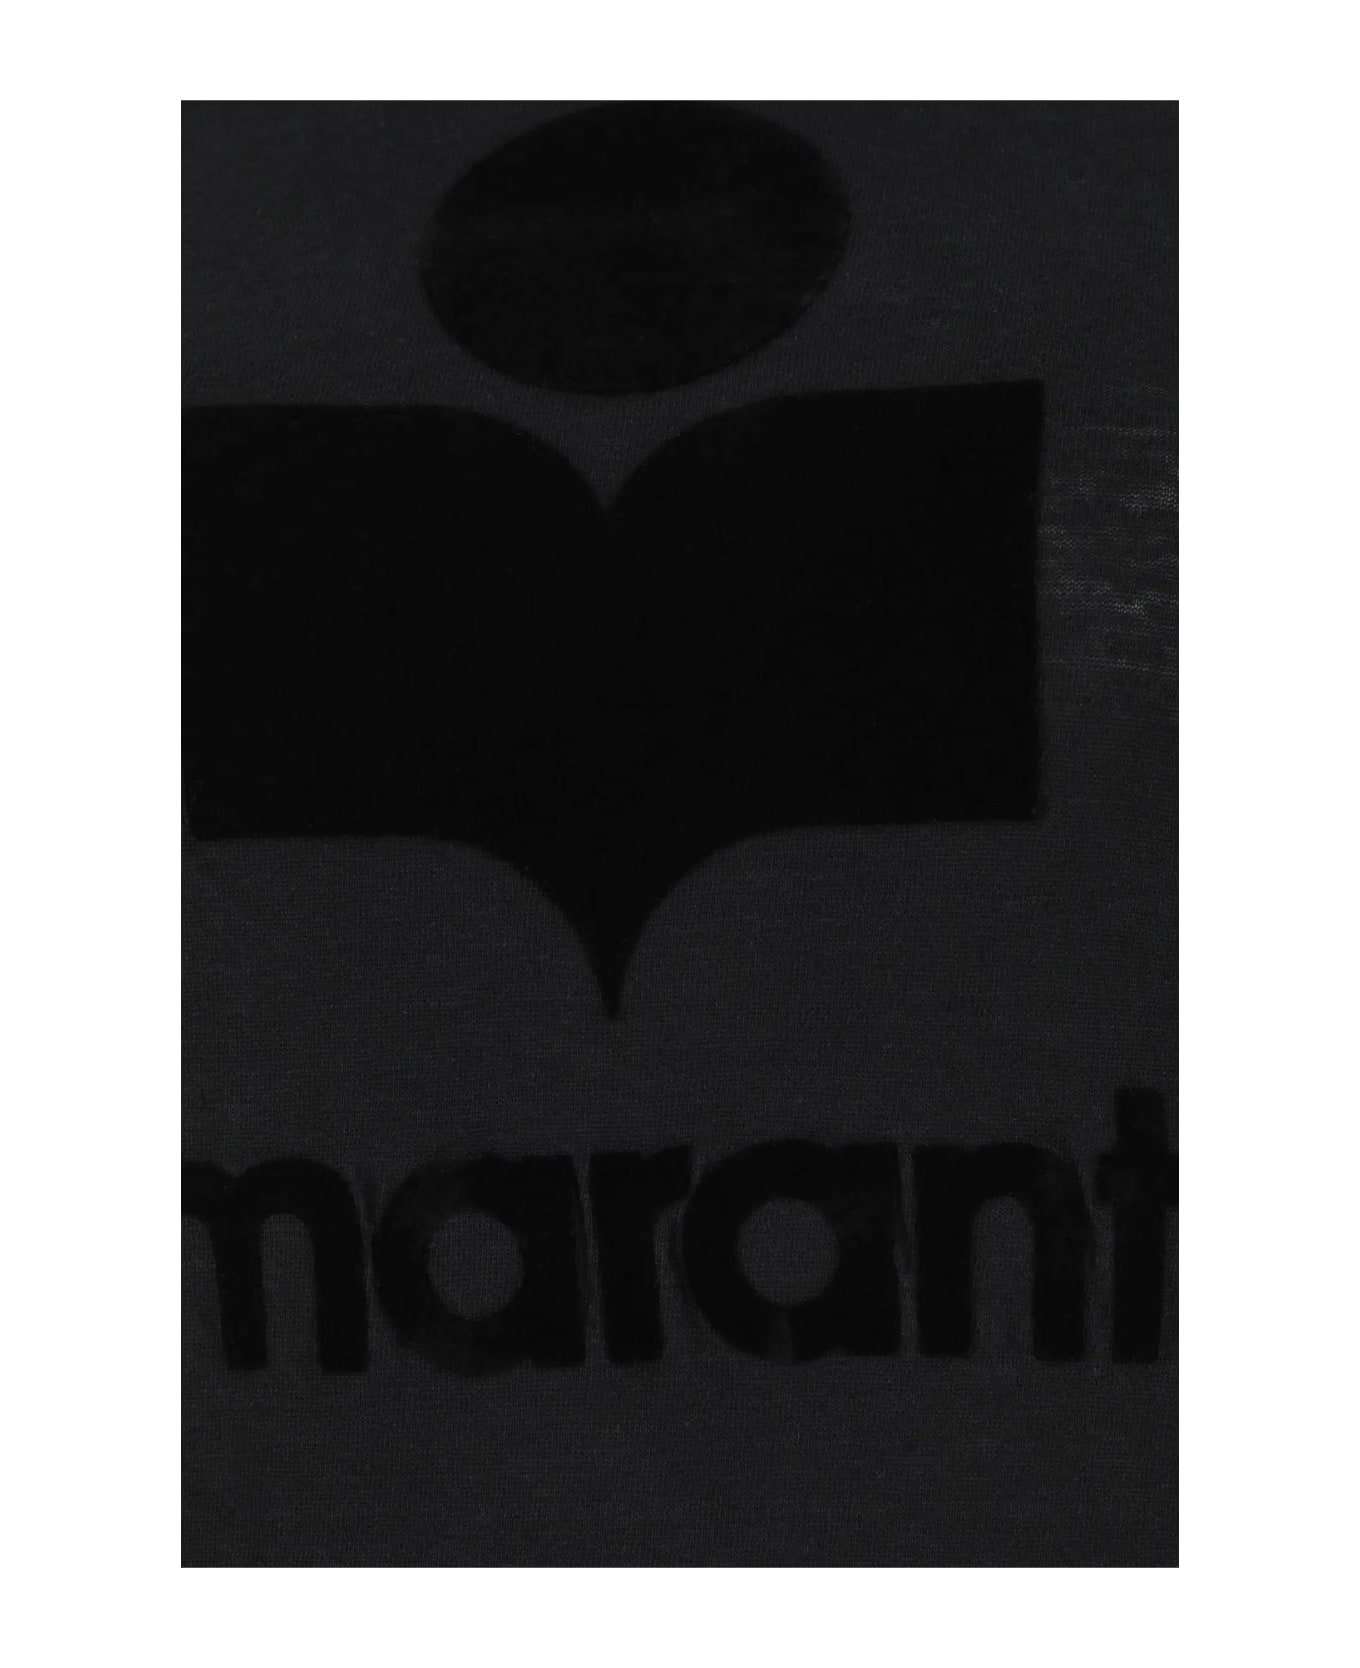 Marant Étoile Black Linen Koldi T-shirt - Black Tシャツ